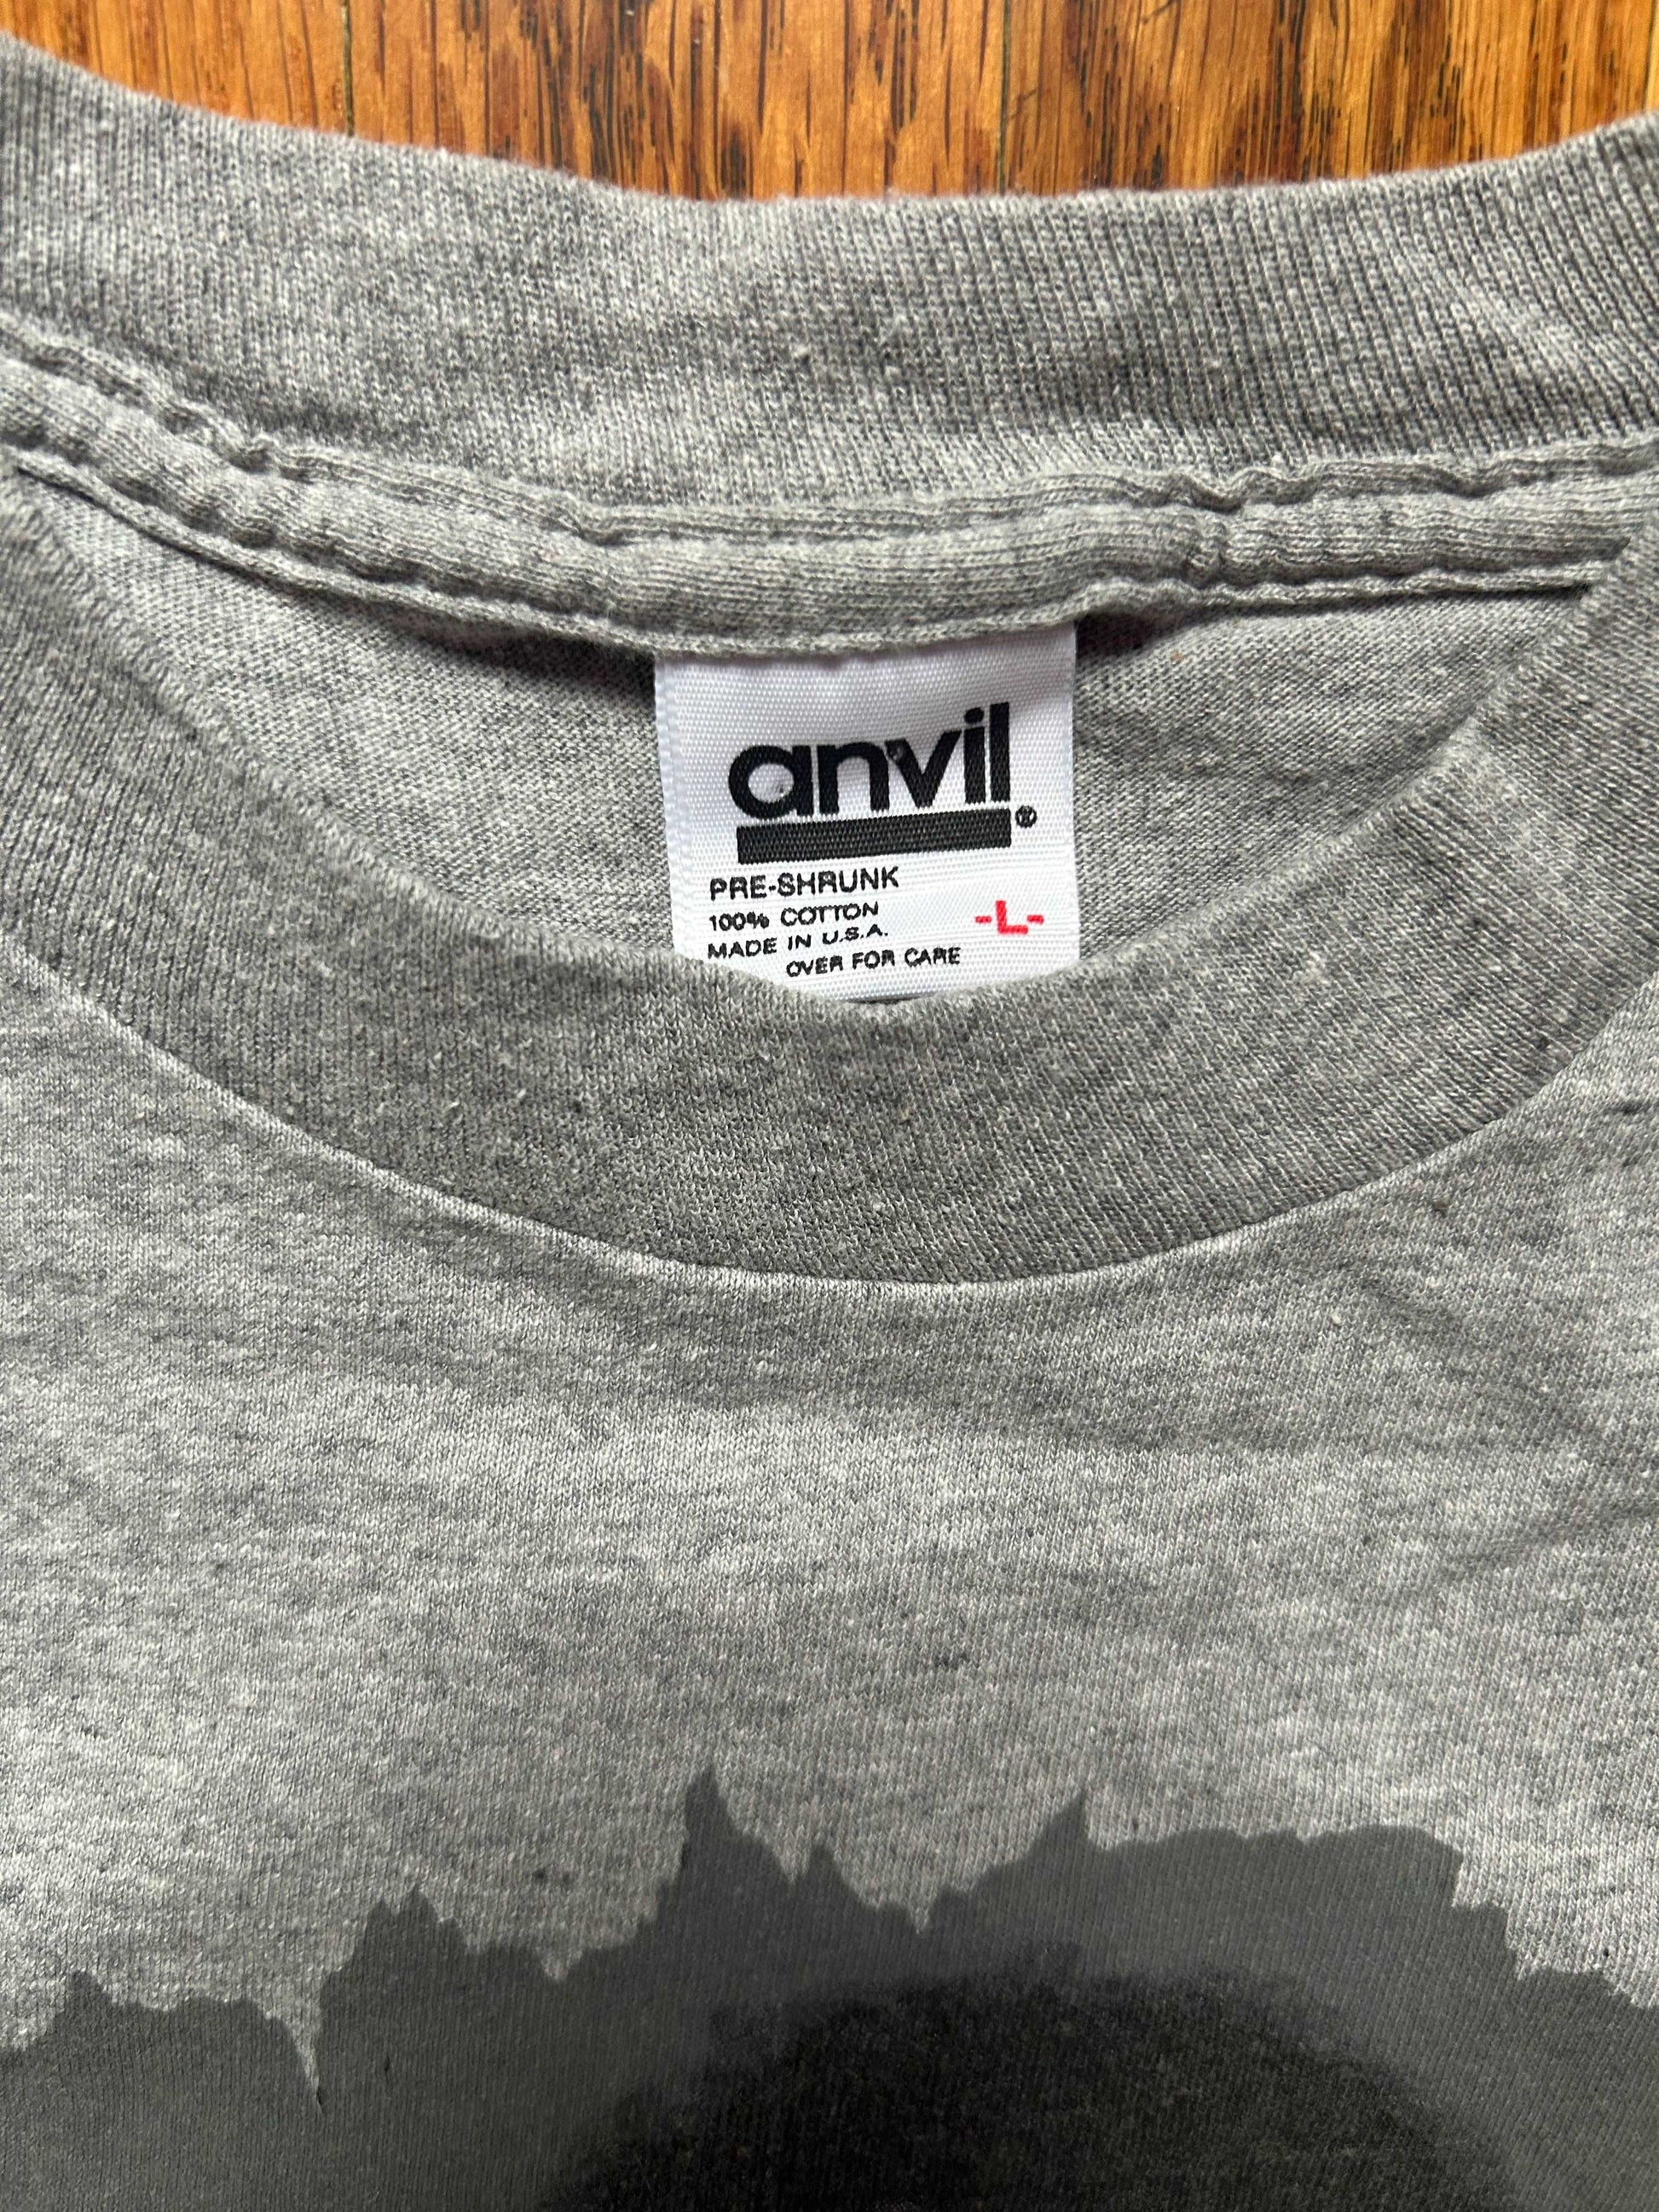 1989 David Crosby T Shirt Size - L